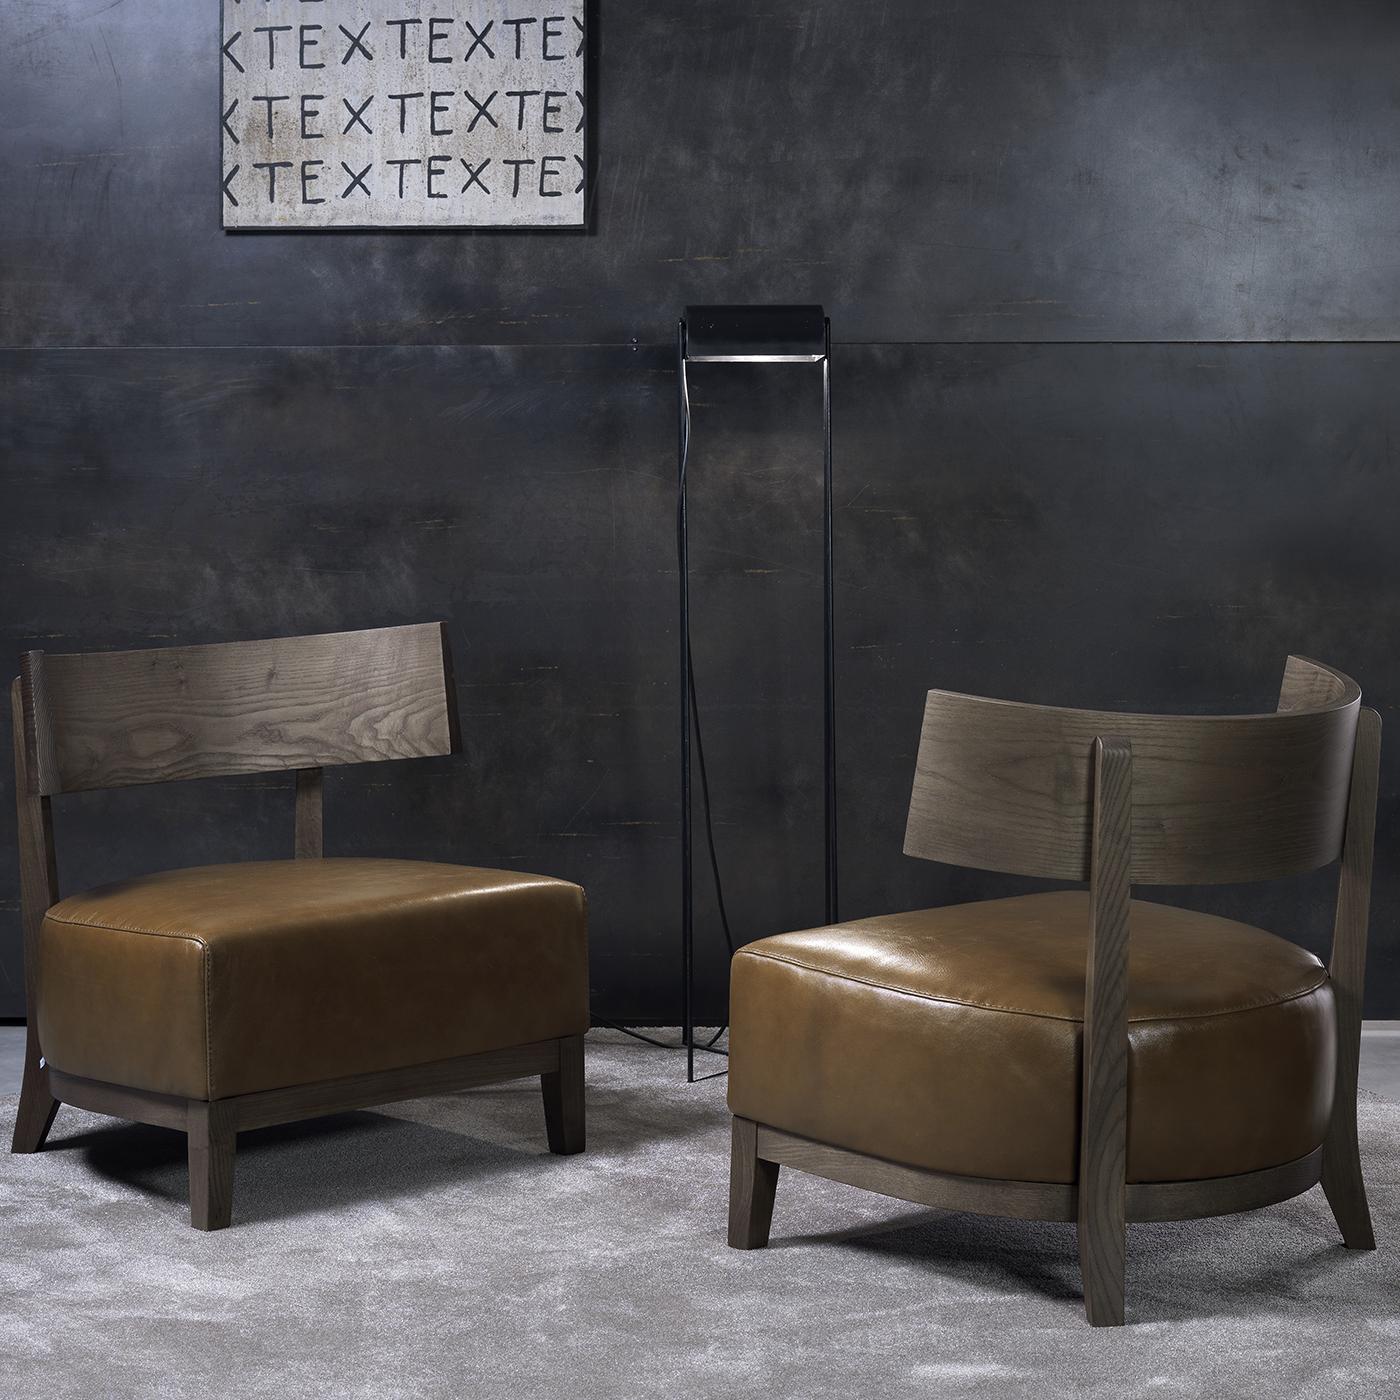 Cette superbe chaise longue a été conçue par l'équipe de design interne de Pacini & Cappellini. Sa pièce unique fera sensation dans une entrée moderne, un salon rustique ou un bureau contemporain, grâce à son épais coussin d'assise et à l'exquise